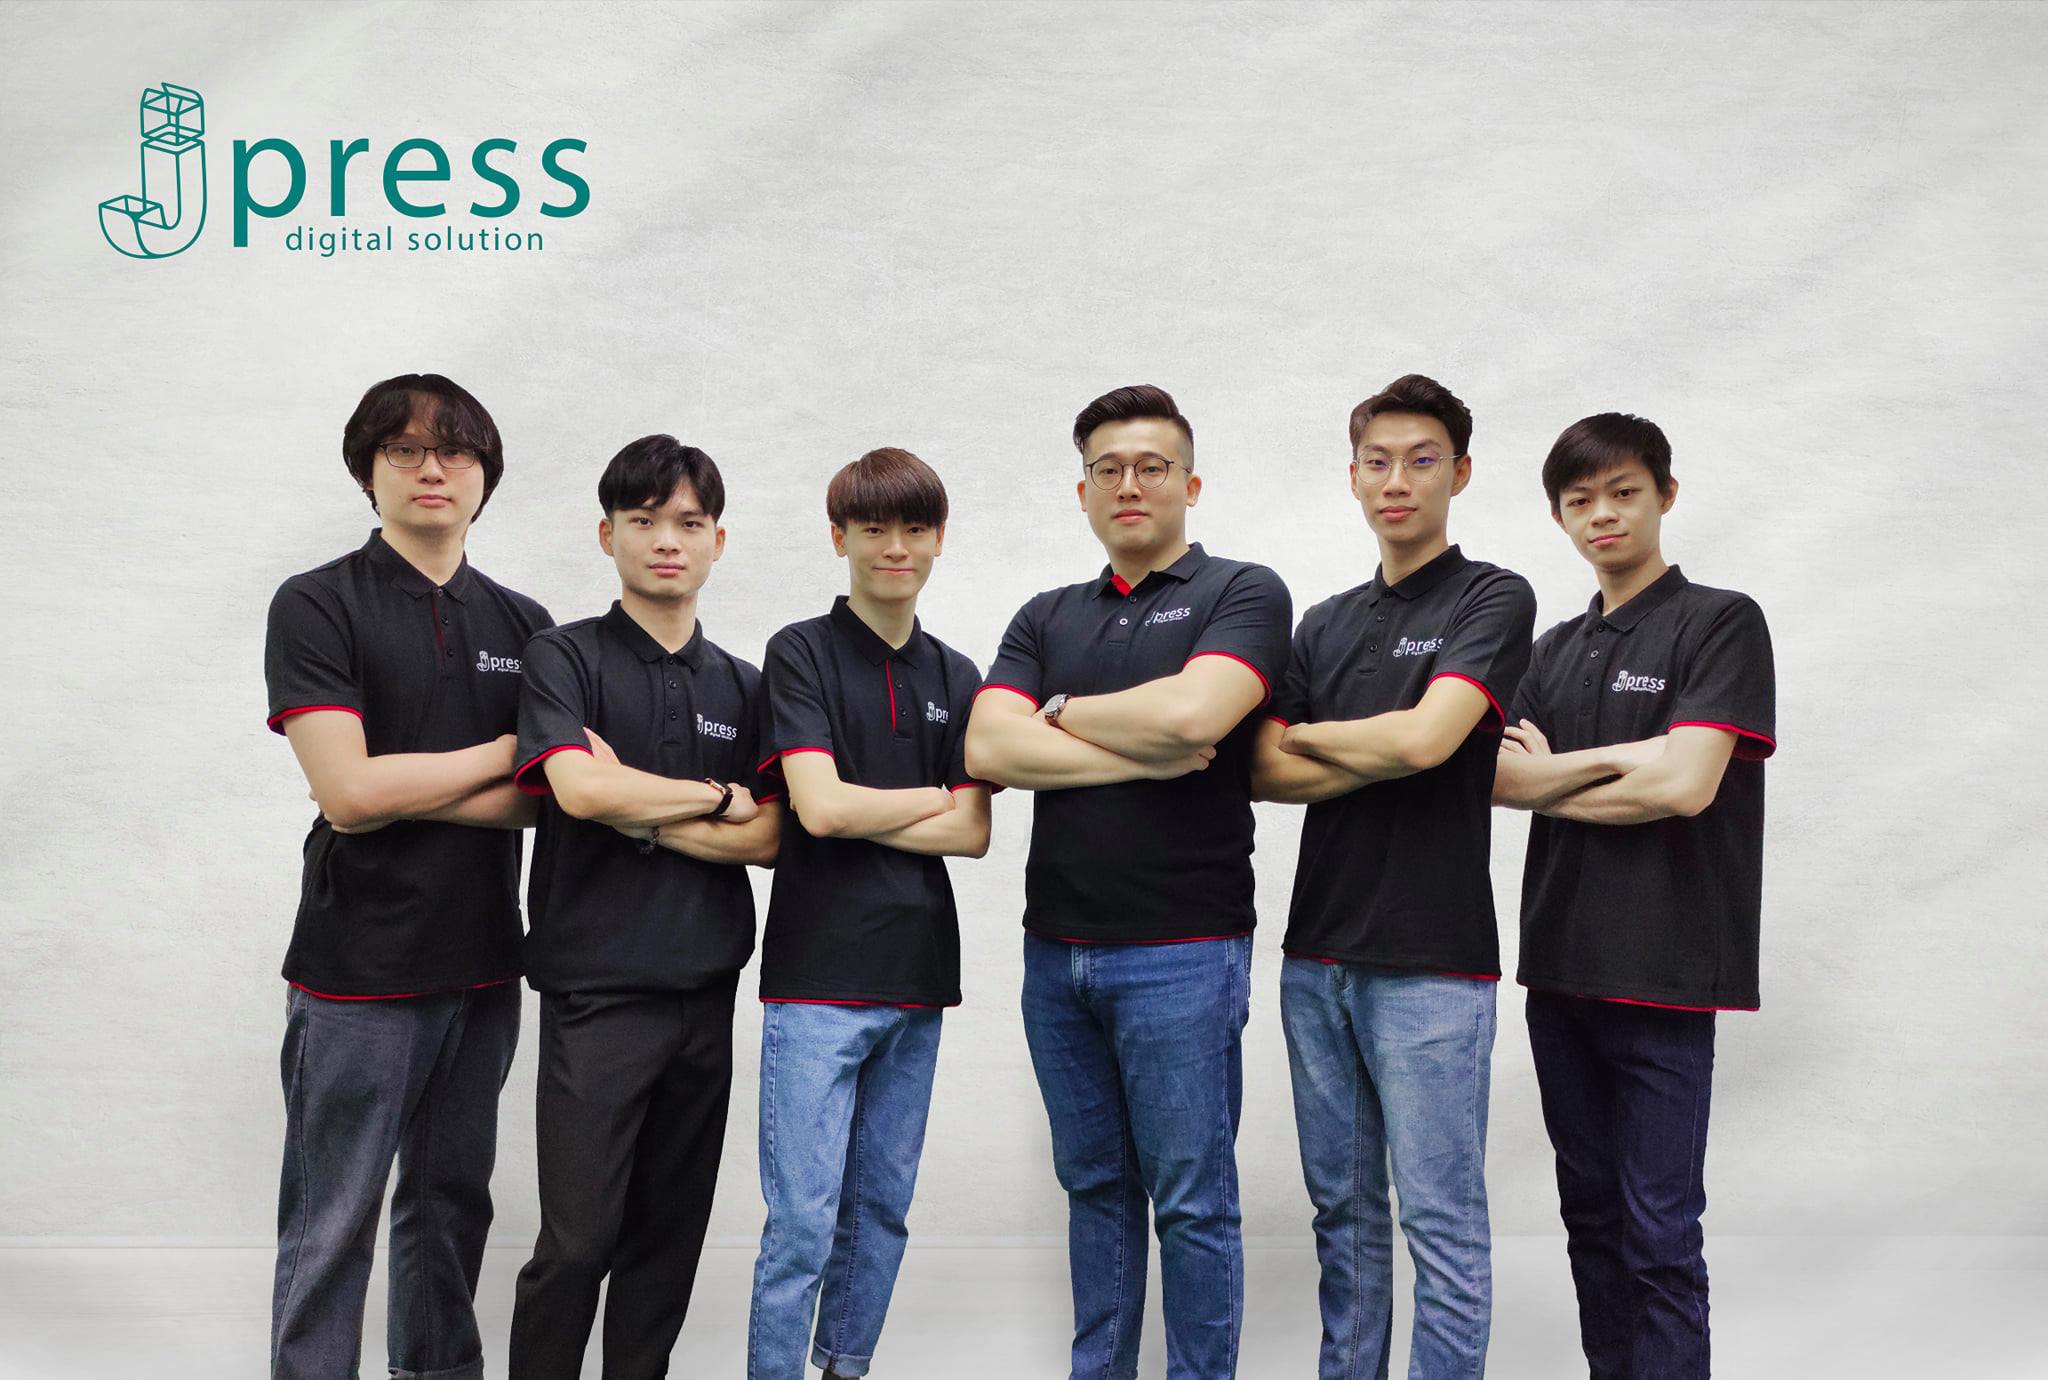 jpress team